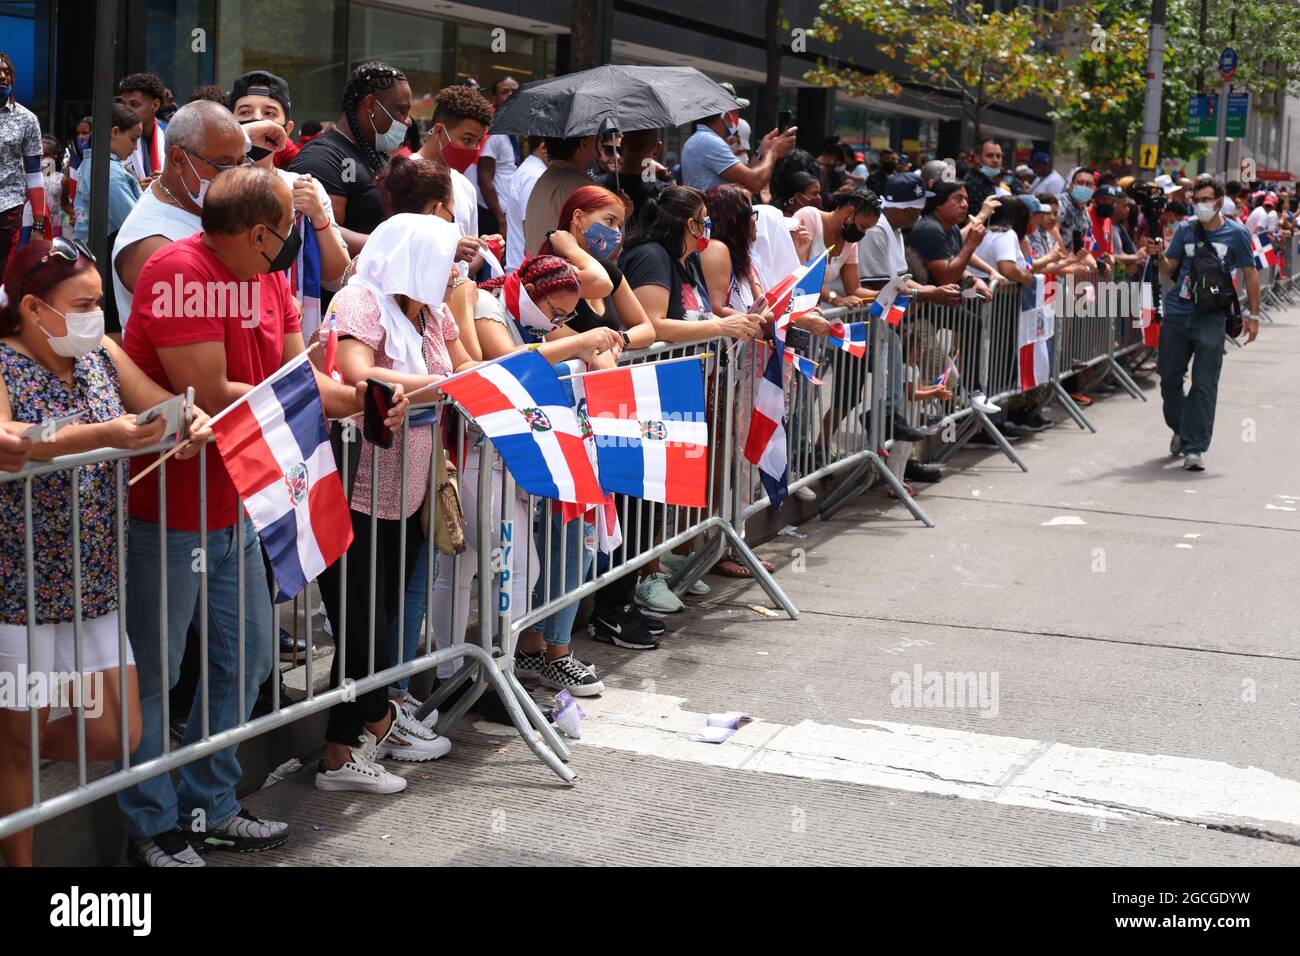 Jährliche Parade zum Puerto-ricanischen Tag in Manhattan, New York. Stockfoto